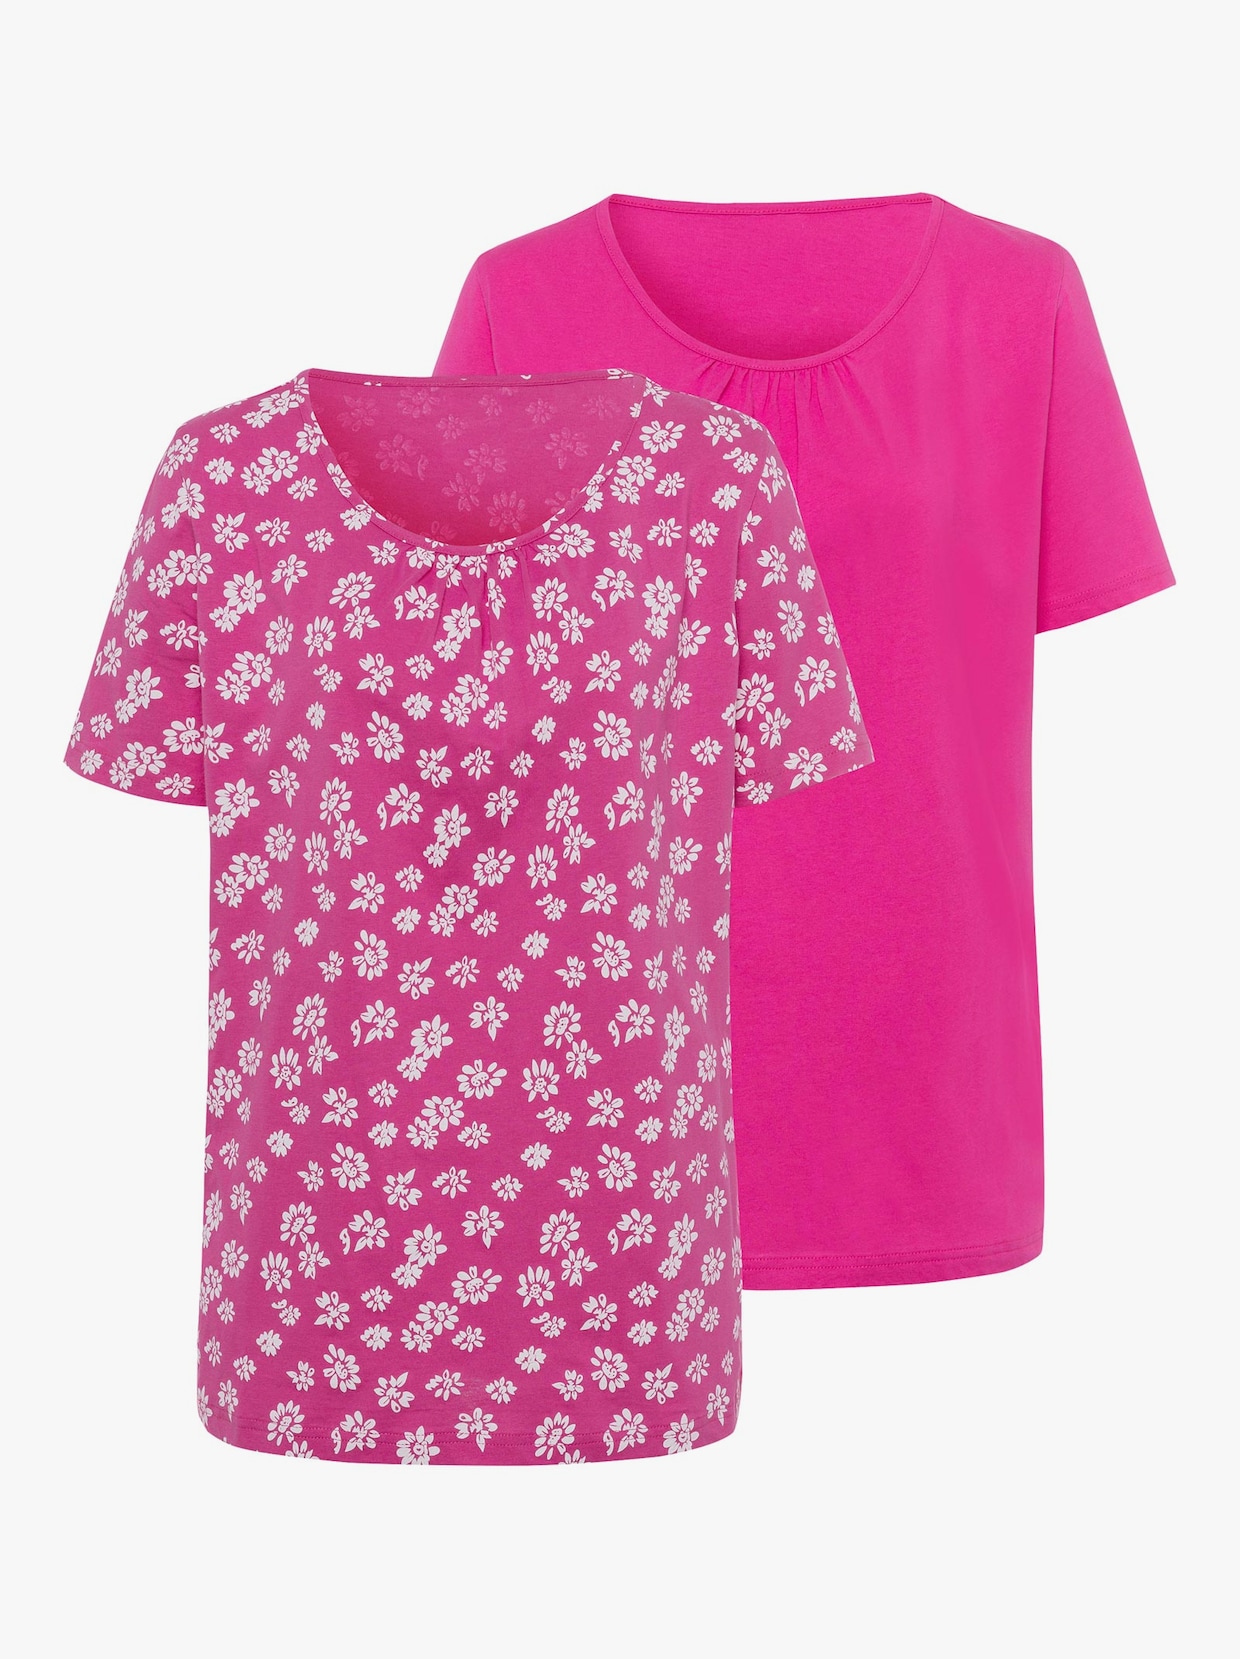 Tričko s krátkým rukávem - pink